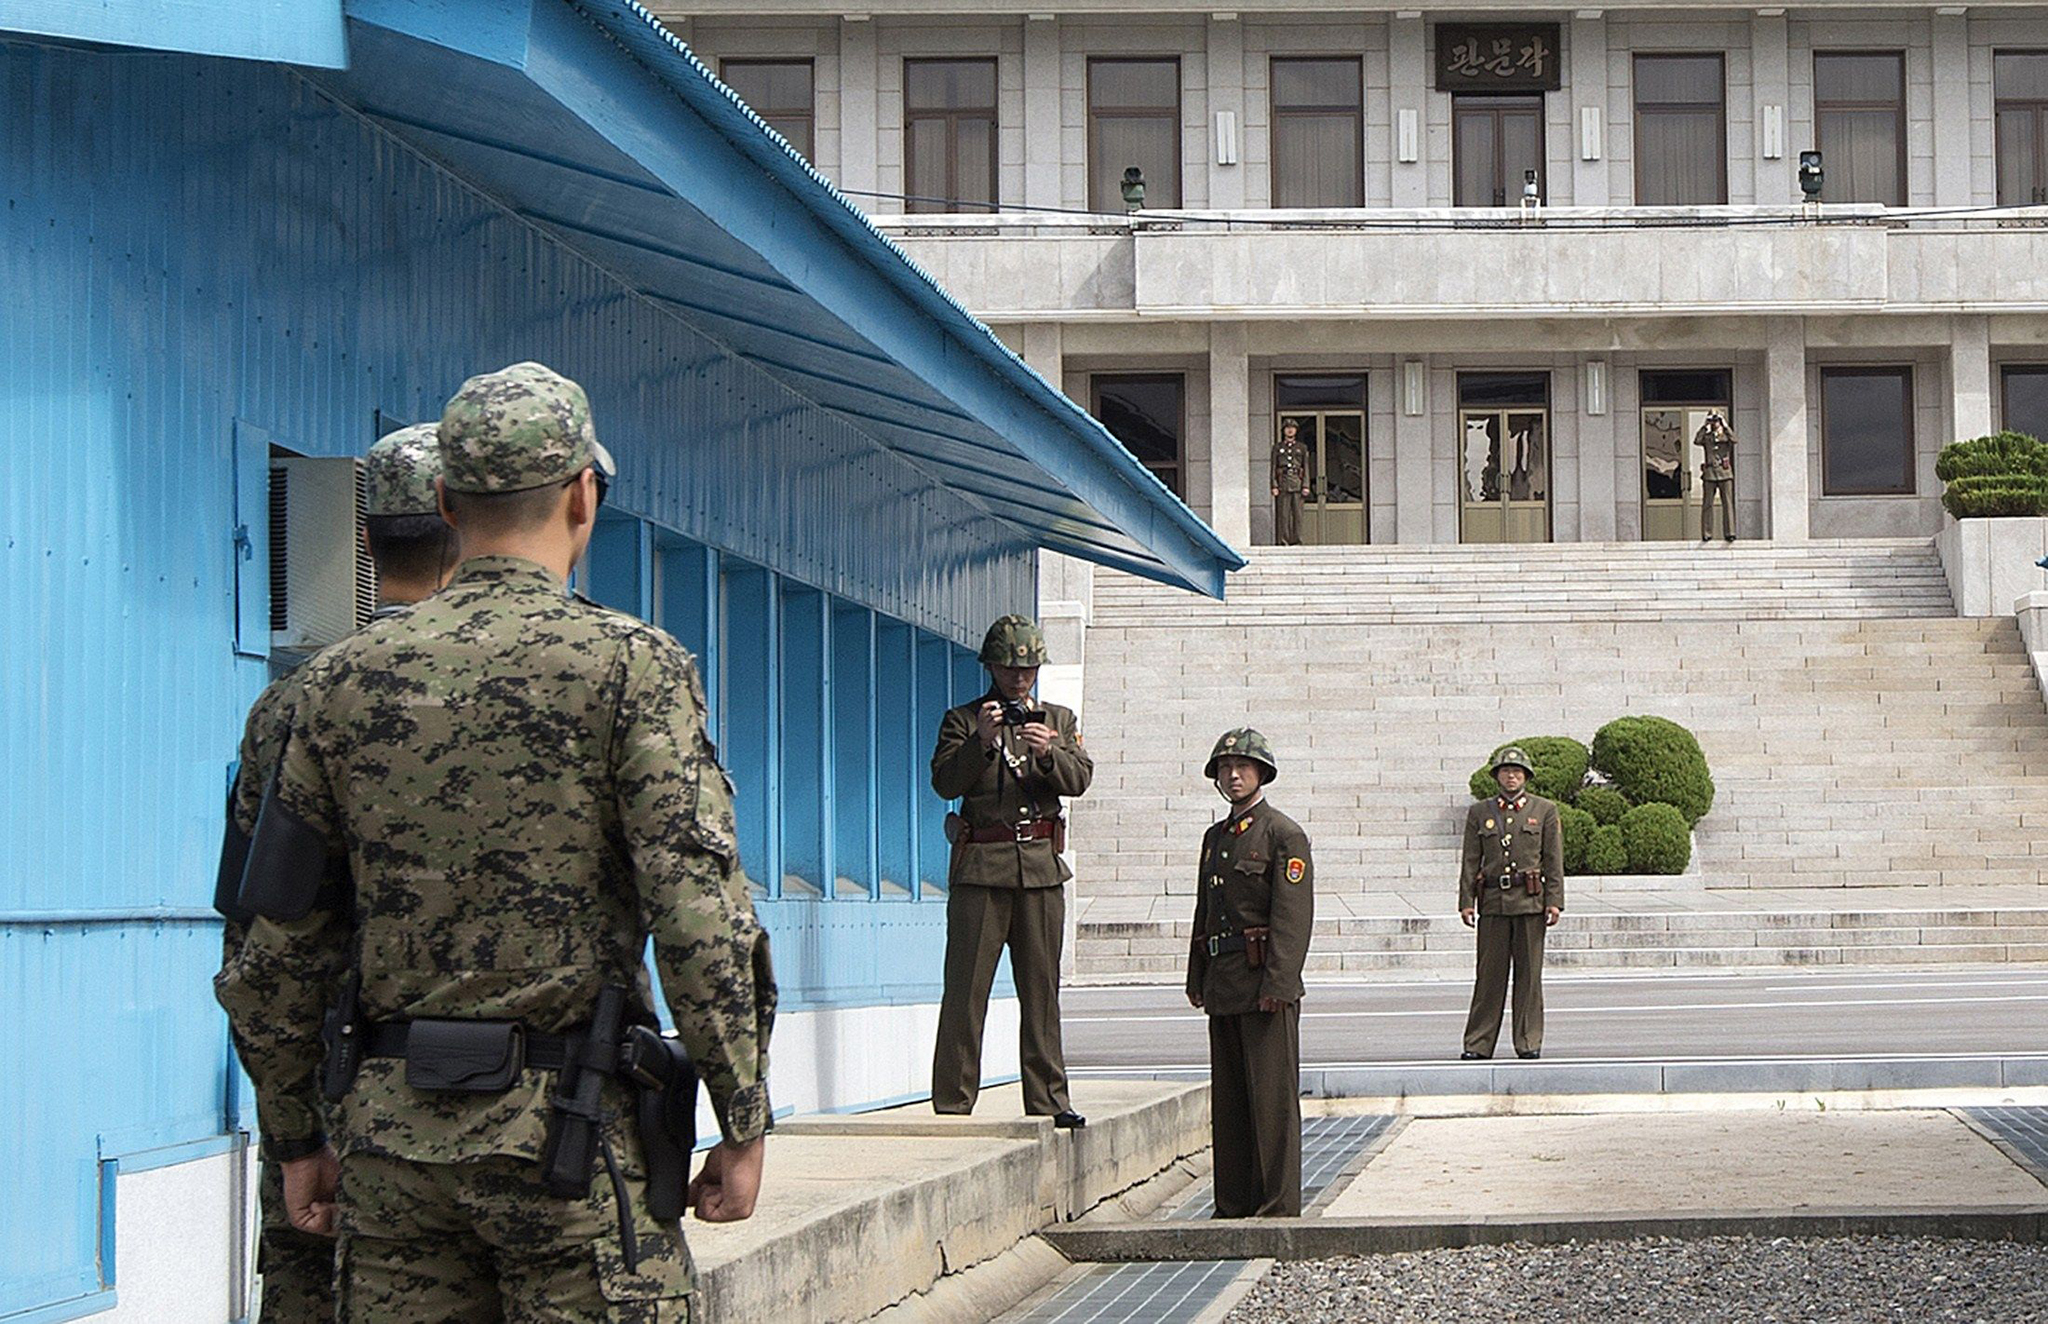 Coreias | Pequim em defesa da paz e da estabilidade